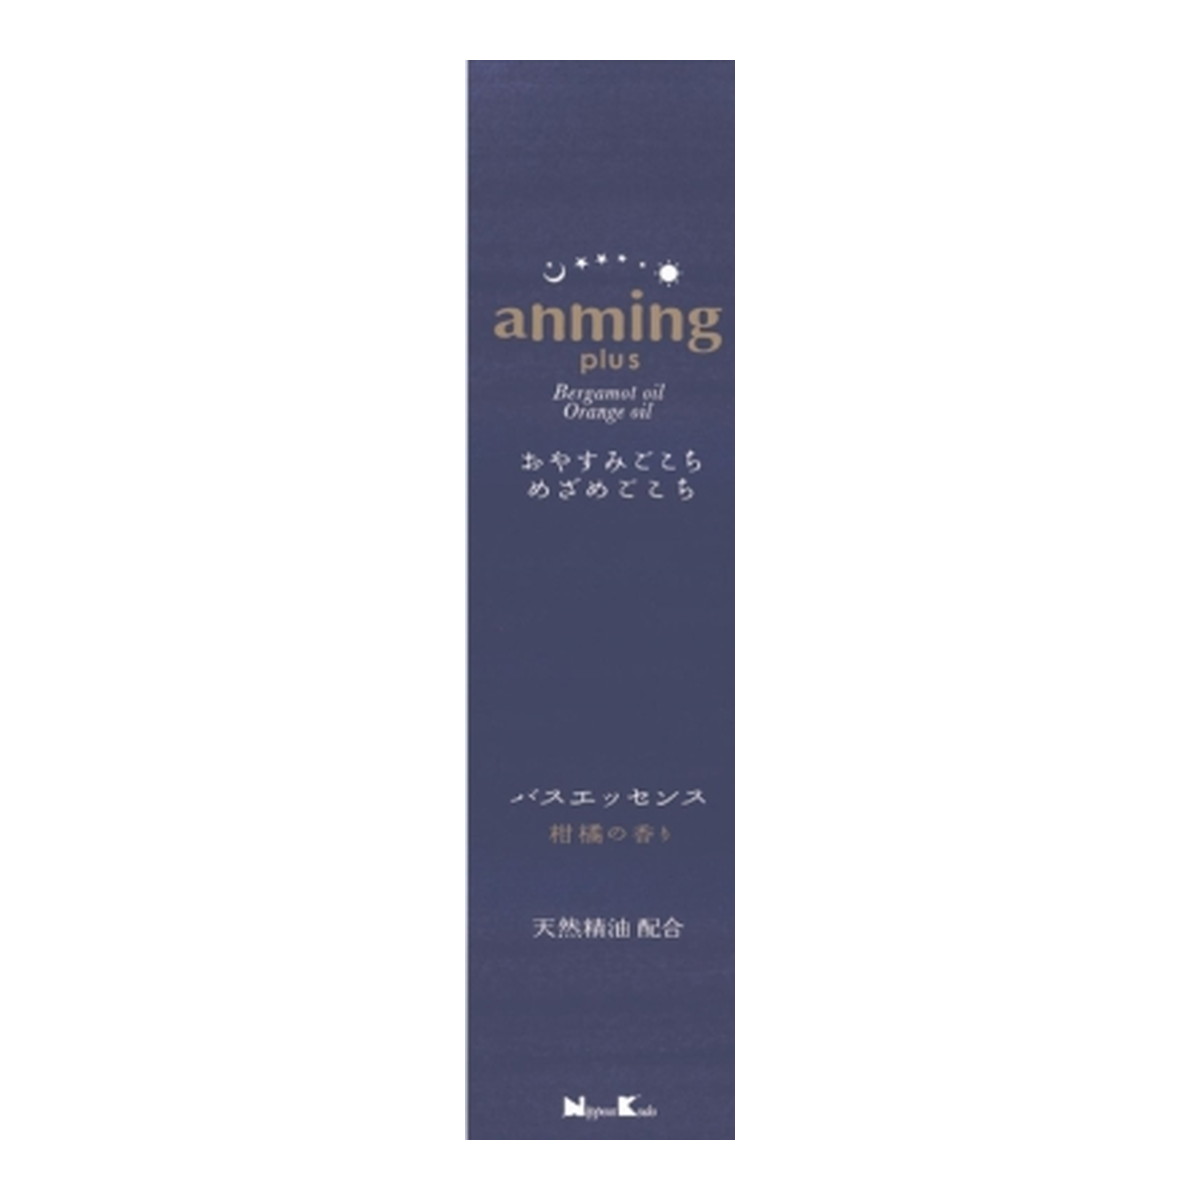 日本香堂 アンミング プラス バスエッセンス 200ML 入浴剤